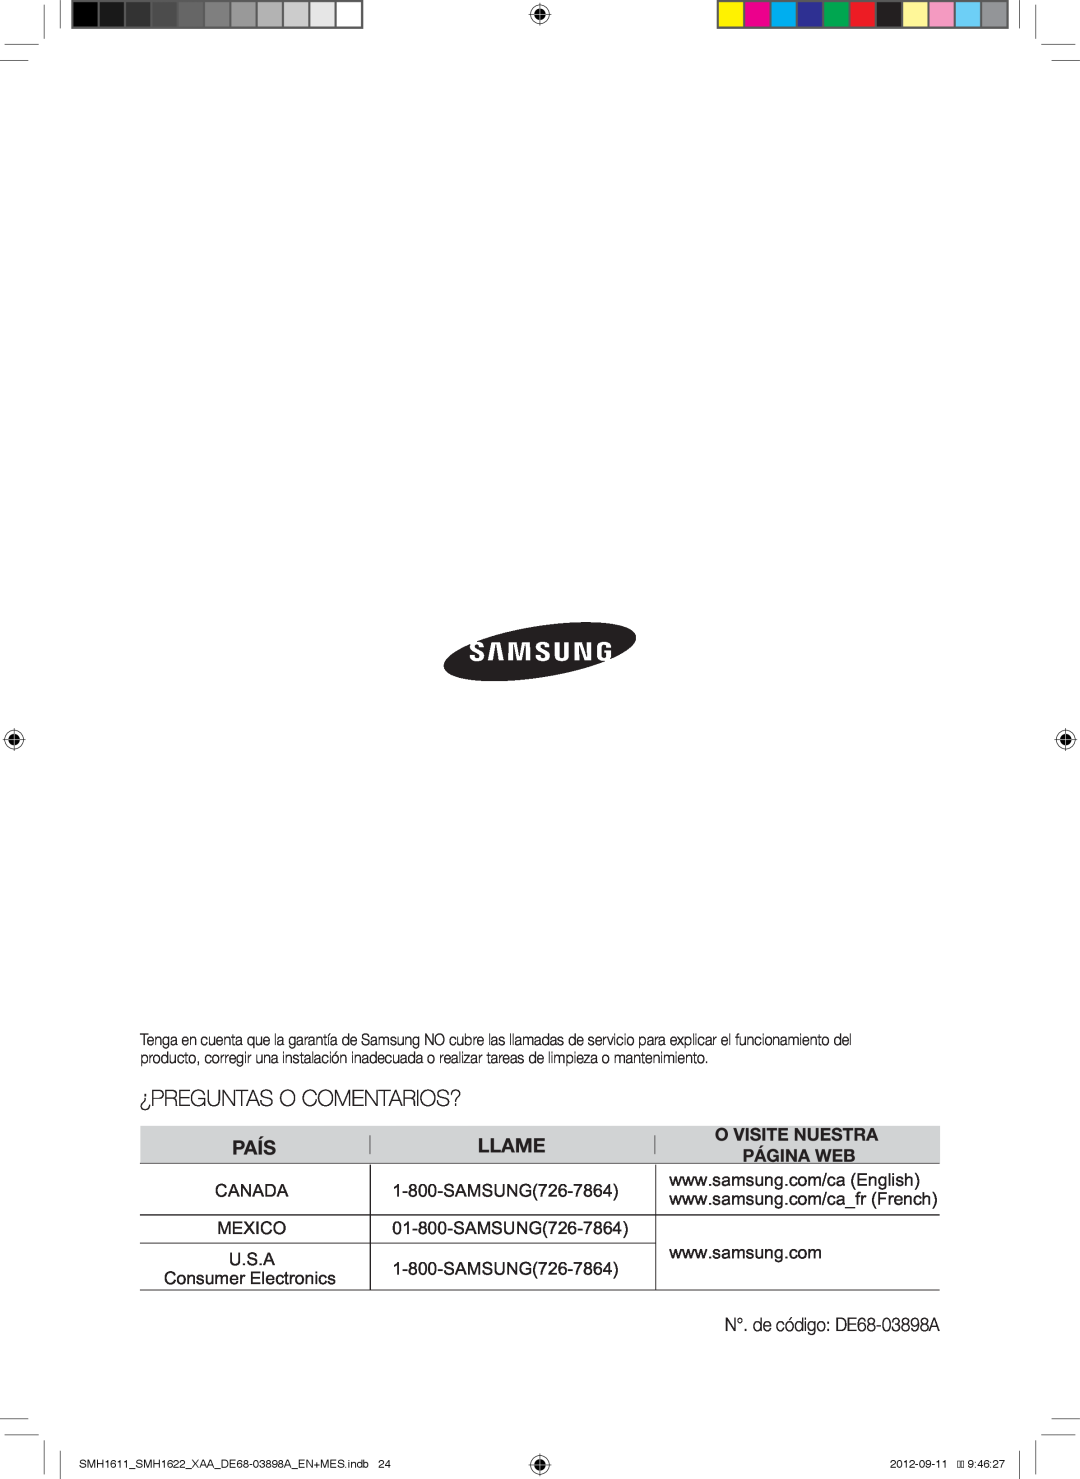 Samsung SMH1622B, SMH1622S, SMH1611, SMH1622W user manual Consumer Electronics, N. de código DE68-03898A 